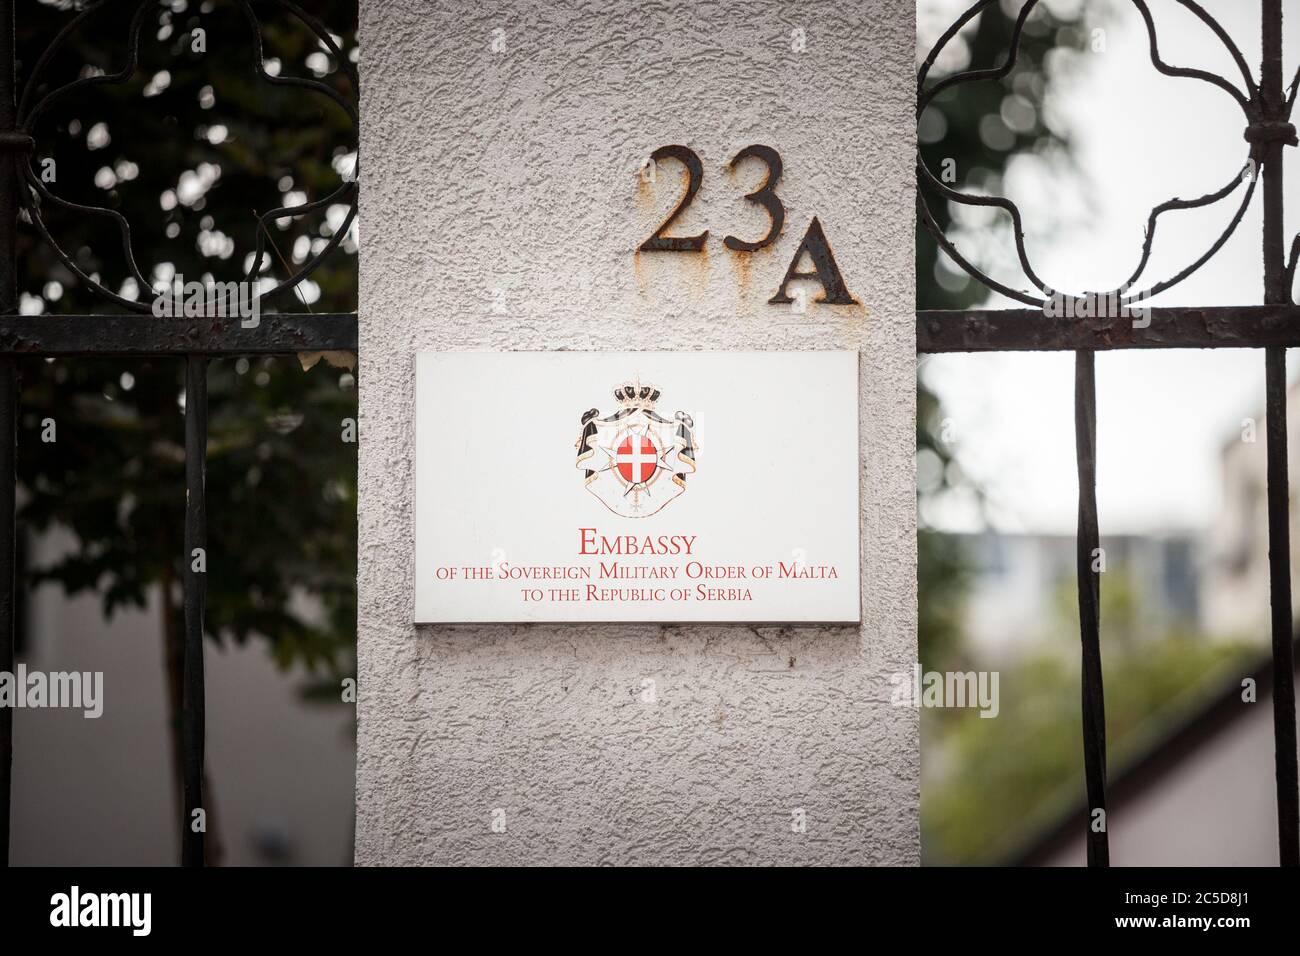 BELGRADO, SERBIA - 3 DE SEPTIEMBRE de 2018: Señal que indica la Orden de Malta Embajada de Belgrado. Es la representación diplomática oficial de la sove Foto de stock